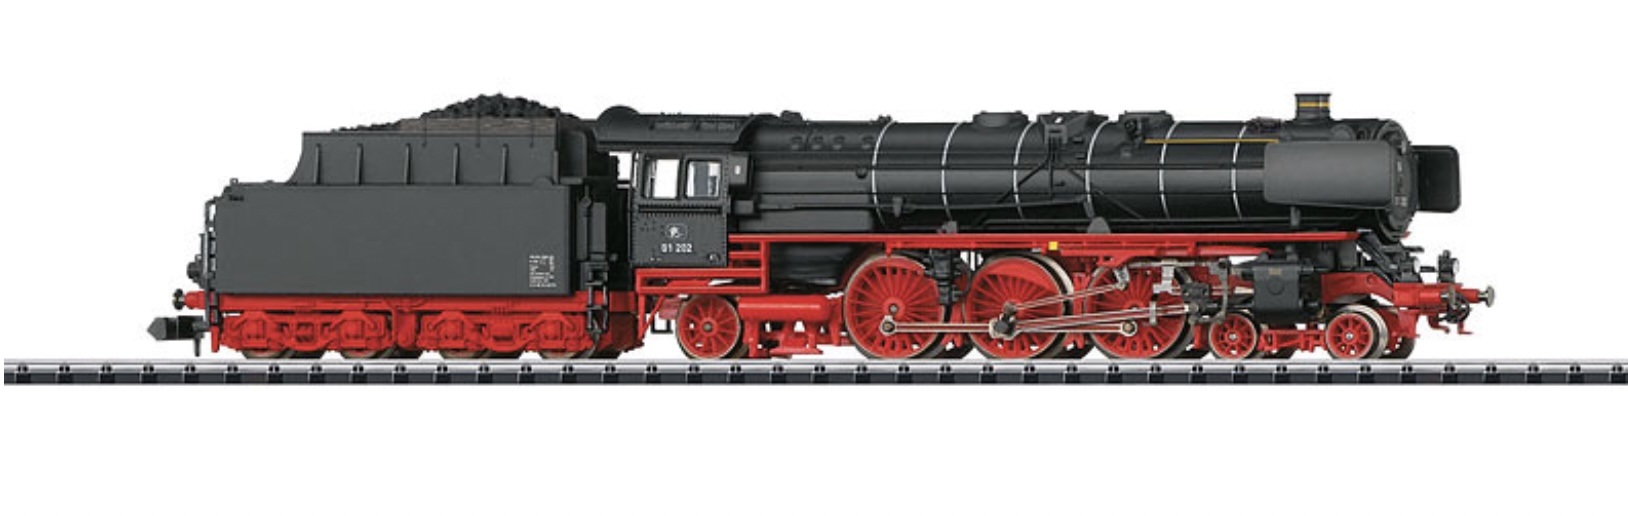 N Scale - Minitrix - 16014 - Locomotive, Steam, 4-6-2 BR 01 - Deutsche Reichsbahn - 01 202